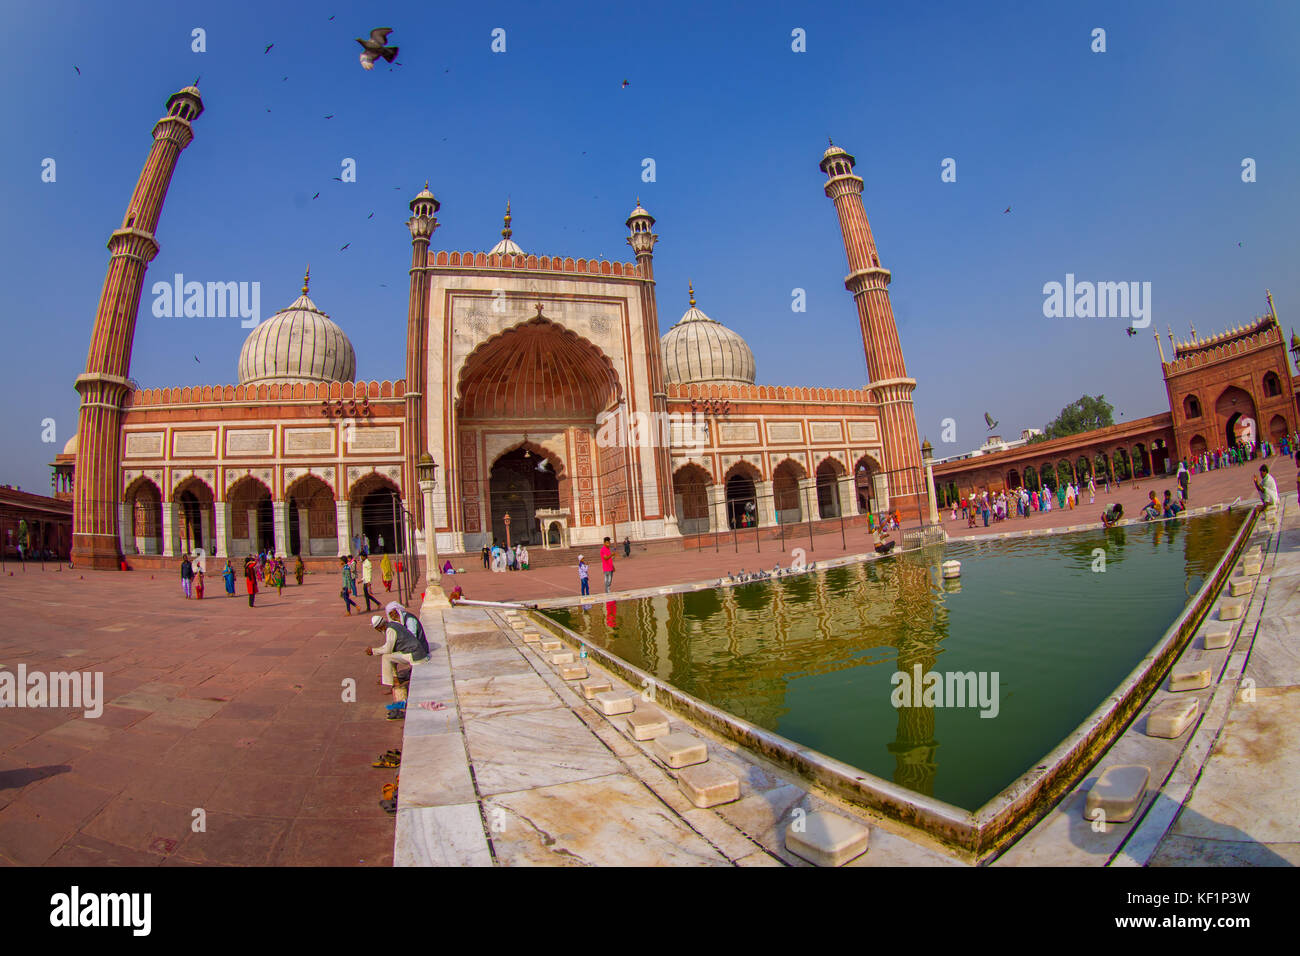 Delhi, Indien - 27. September 2017: unbekannte Menschen zu Fuß in der Nähe des künstlichen Teich vor einem wunderschönen Jama Masjid Tempel, mit einem Vögel fliegen über dem Tempel, das ist die größte muslimische Moschee in Delhi, Indien, Fischaugen-Effekt Stockfoto